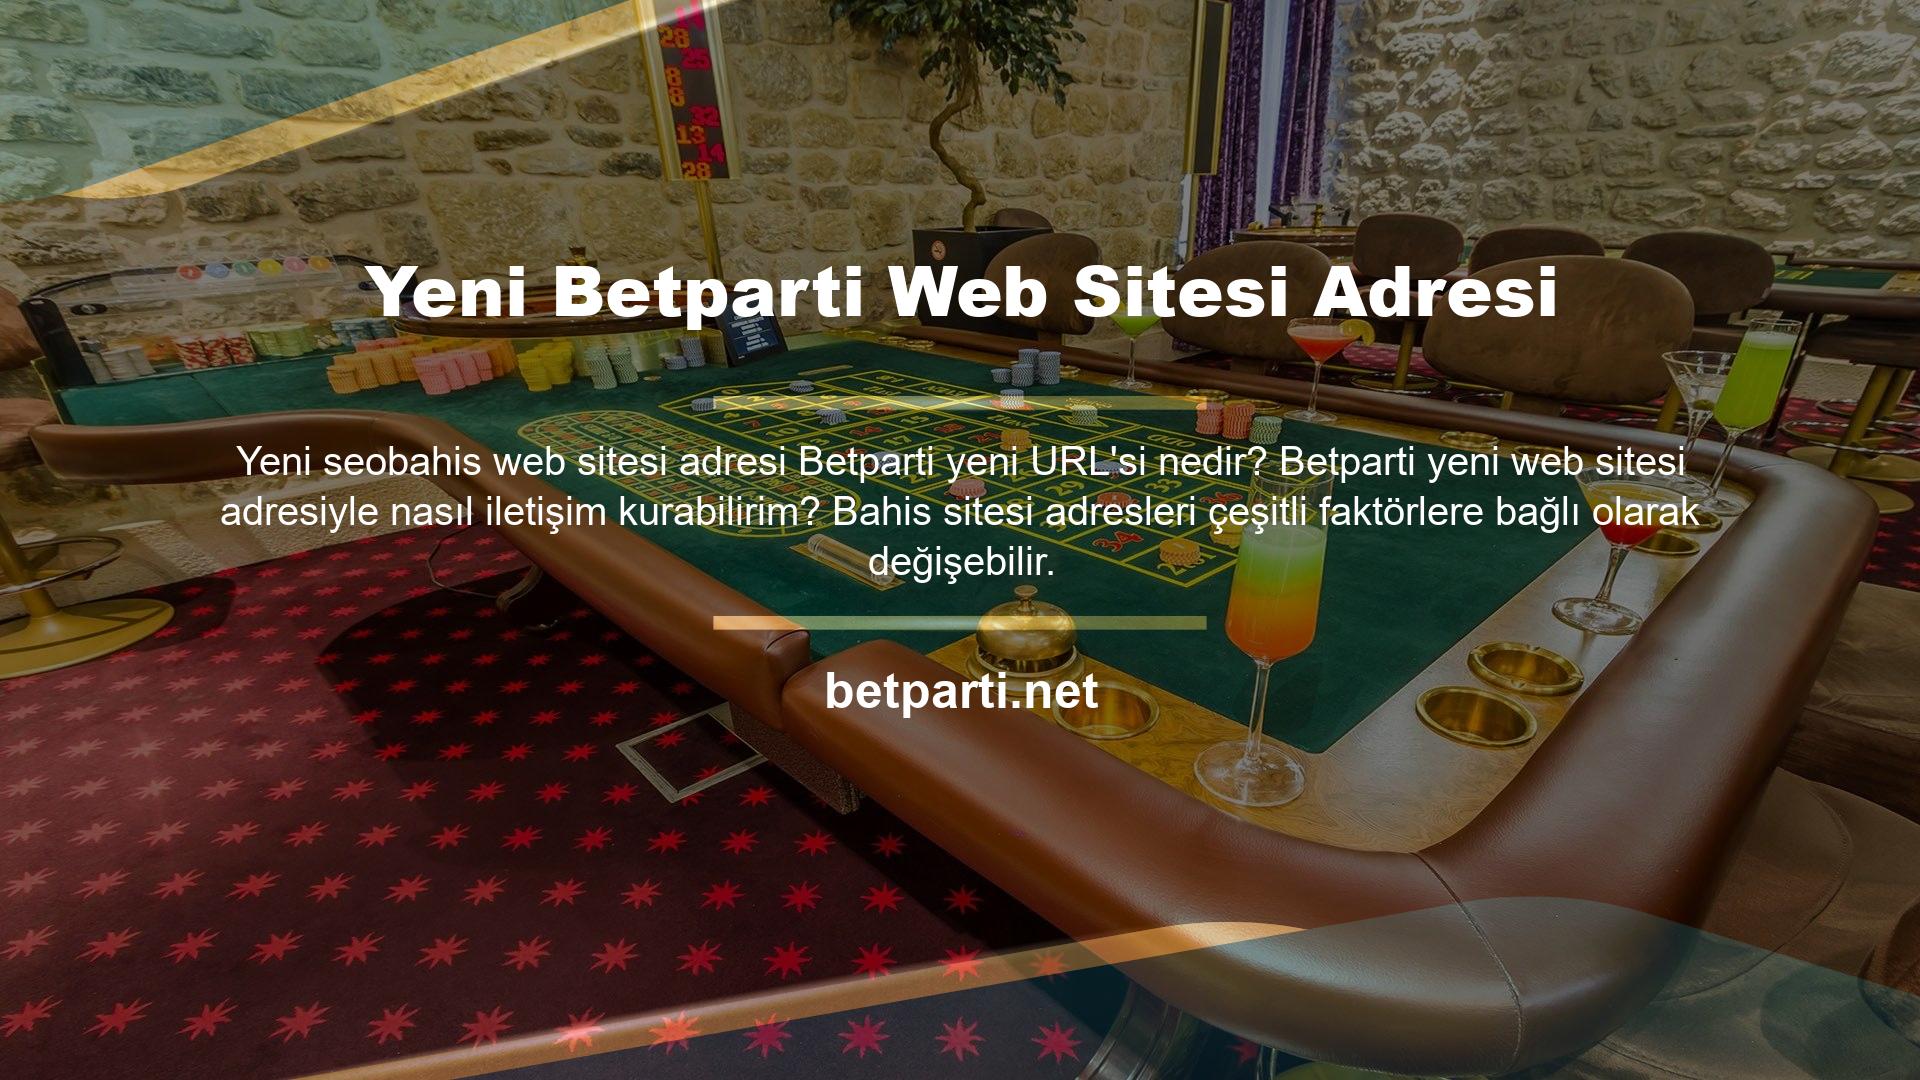 Benzer durumlarda, yeni Betparti web sitesindeki blog aracılığıyla bizimle iletişime geçebilirsiniz